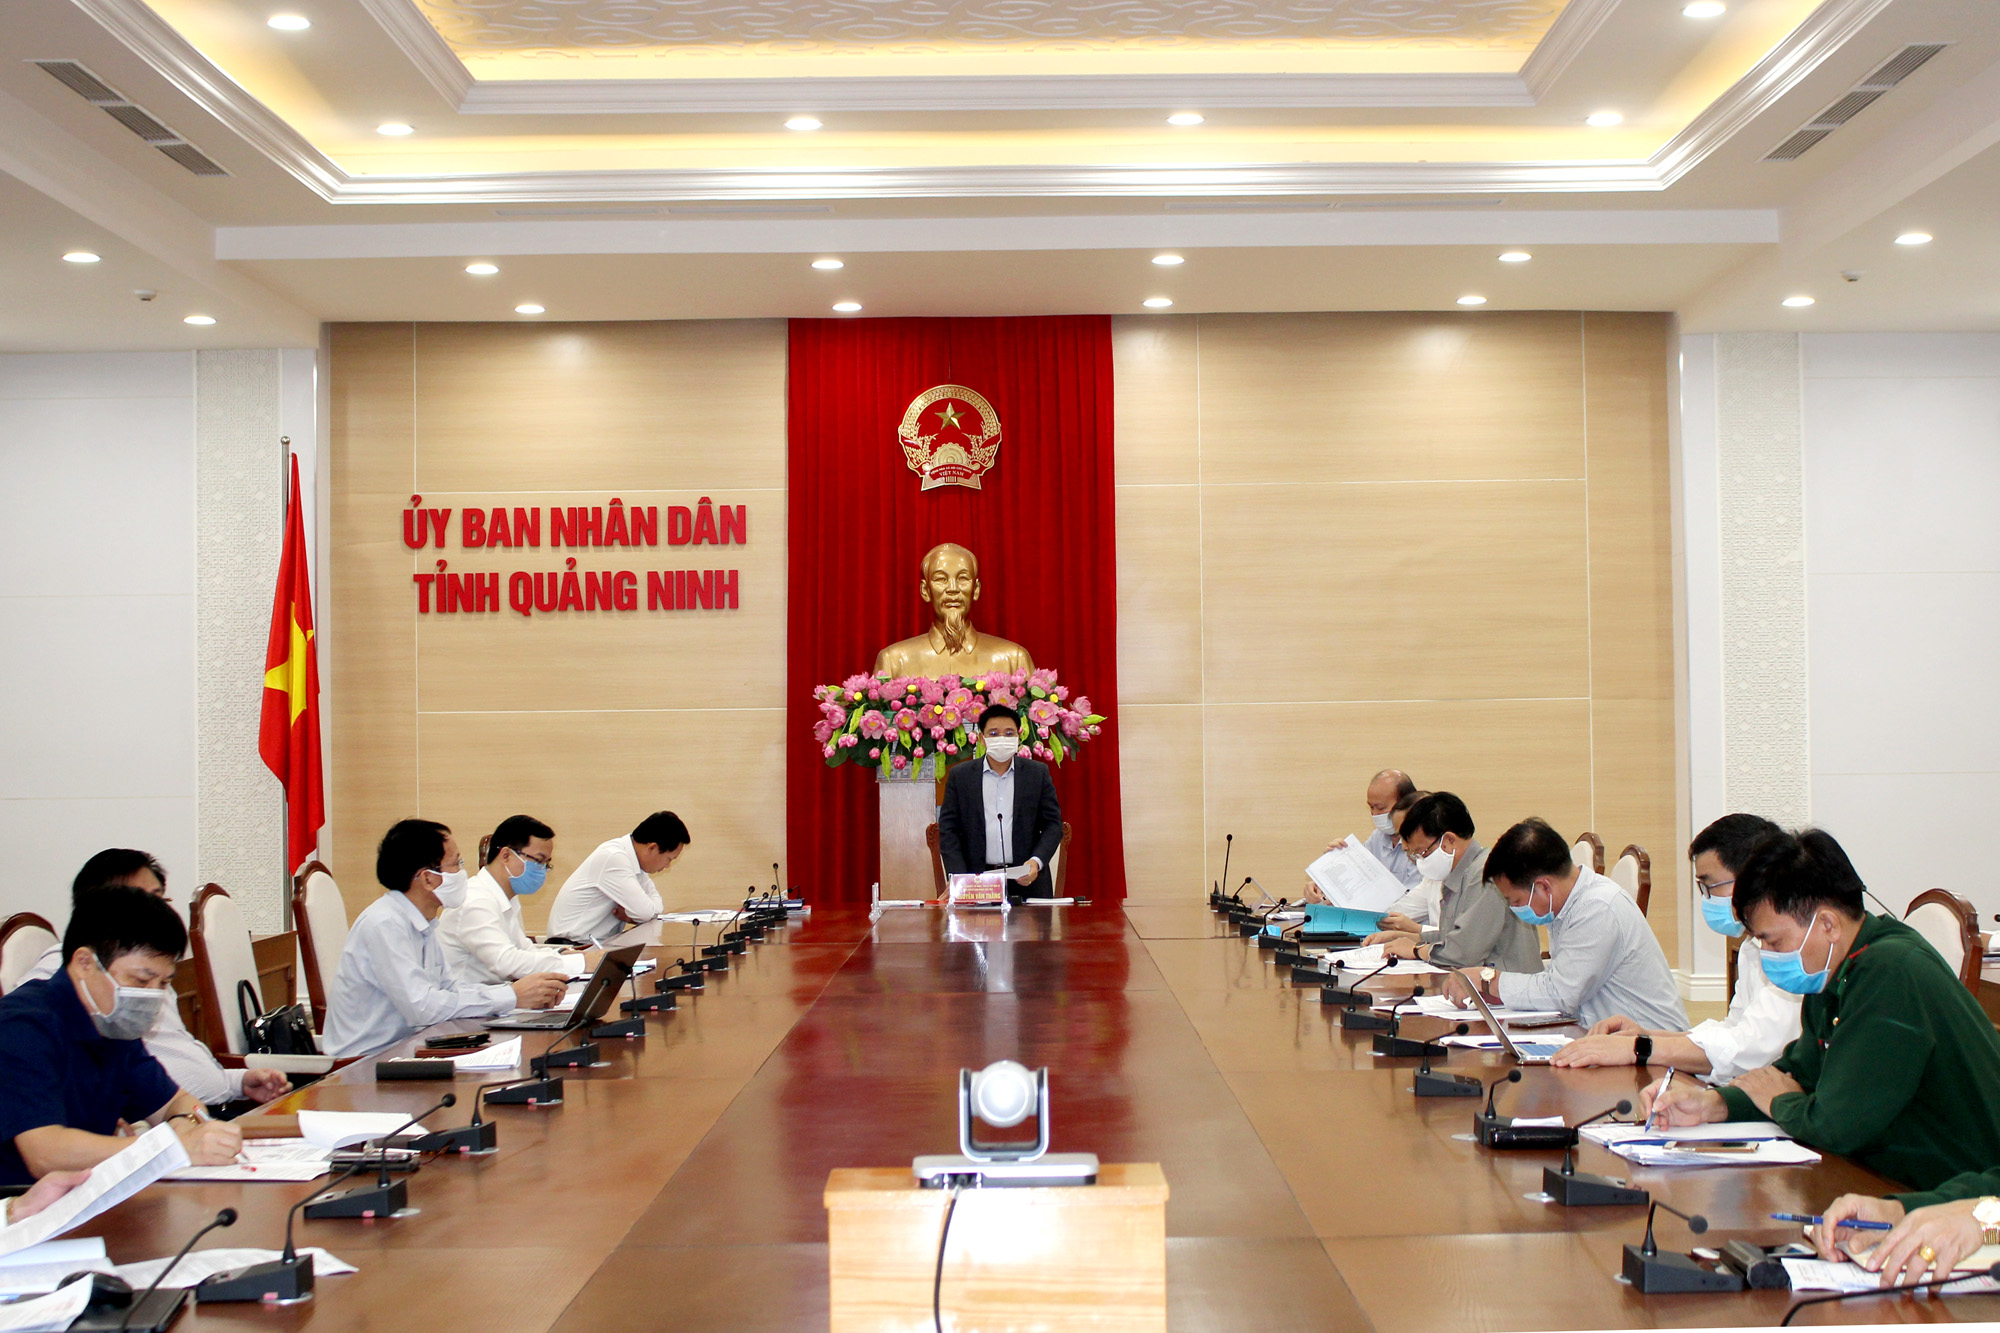 Đồng chí Nguyễn Văn Thắng, Chủ tịch UBND tỉnh, chủ trì cuộc họp.